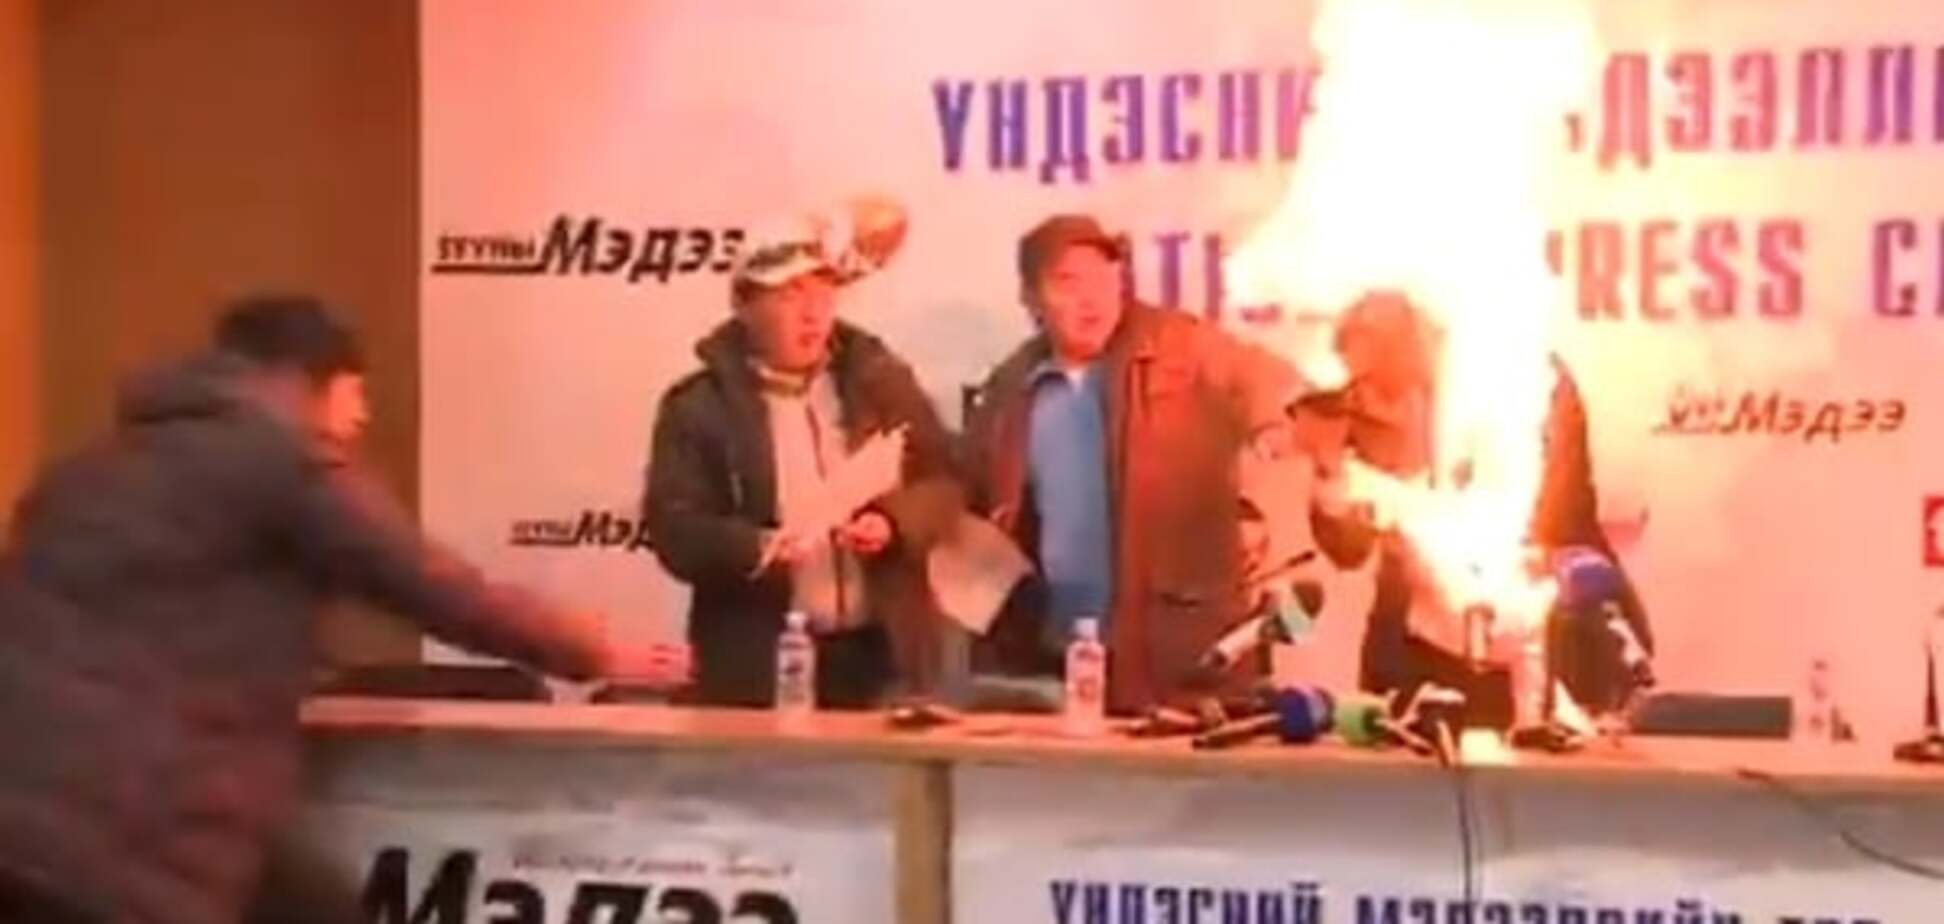 В Монголии глава профсоюза облил себя бензином и поджег: видео 18+